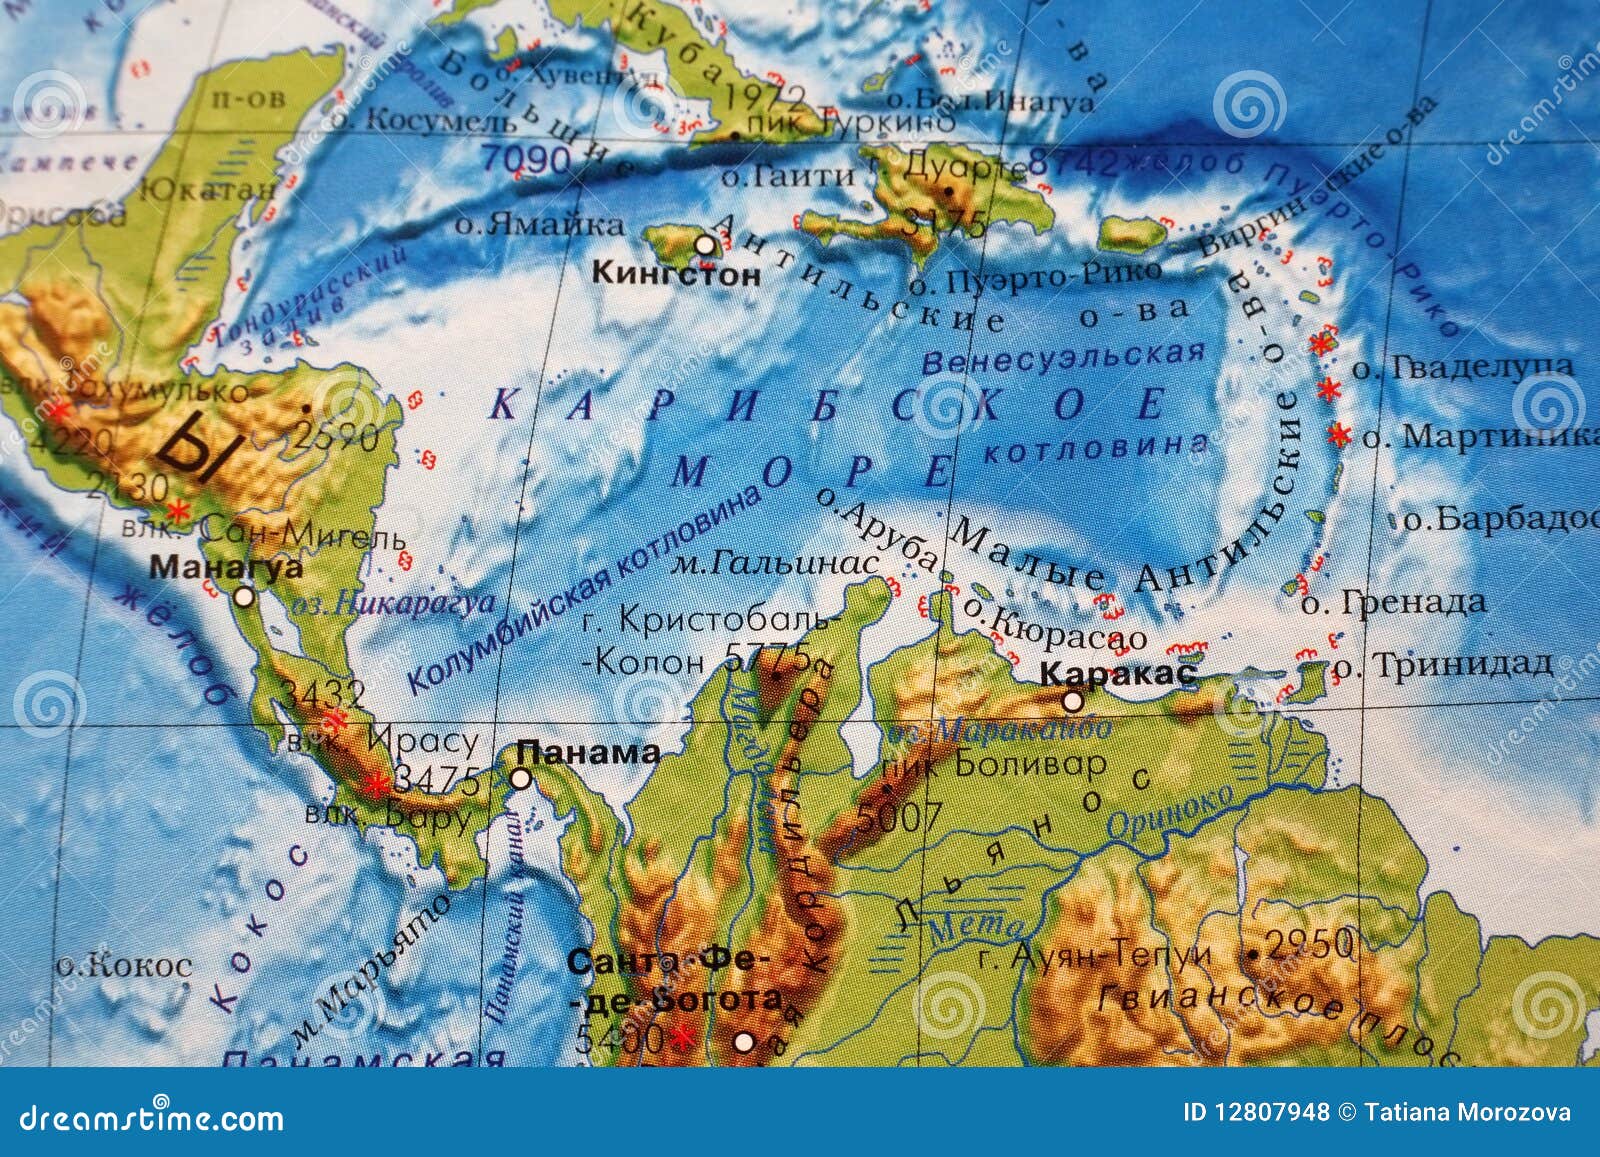 Karibisches Meer stock abbildung. Illustration von symbol - 12807948